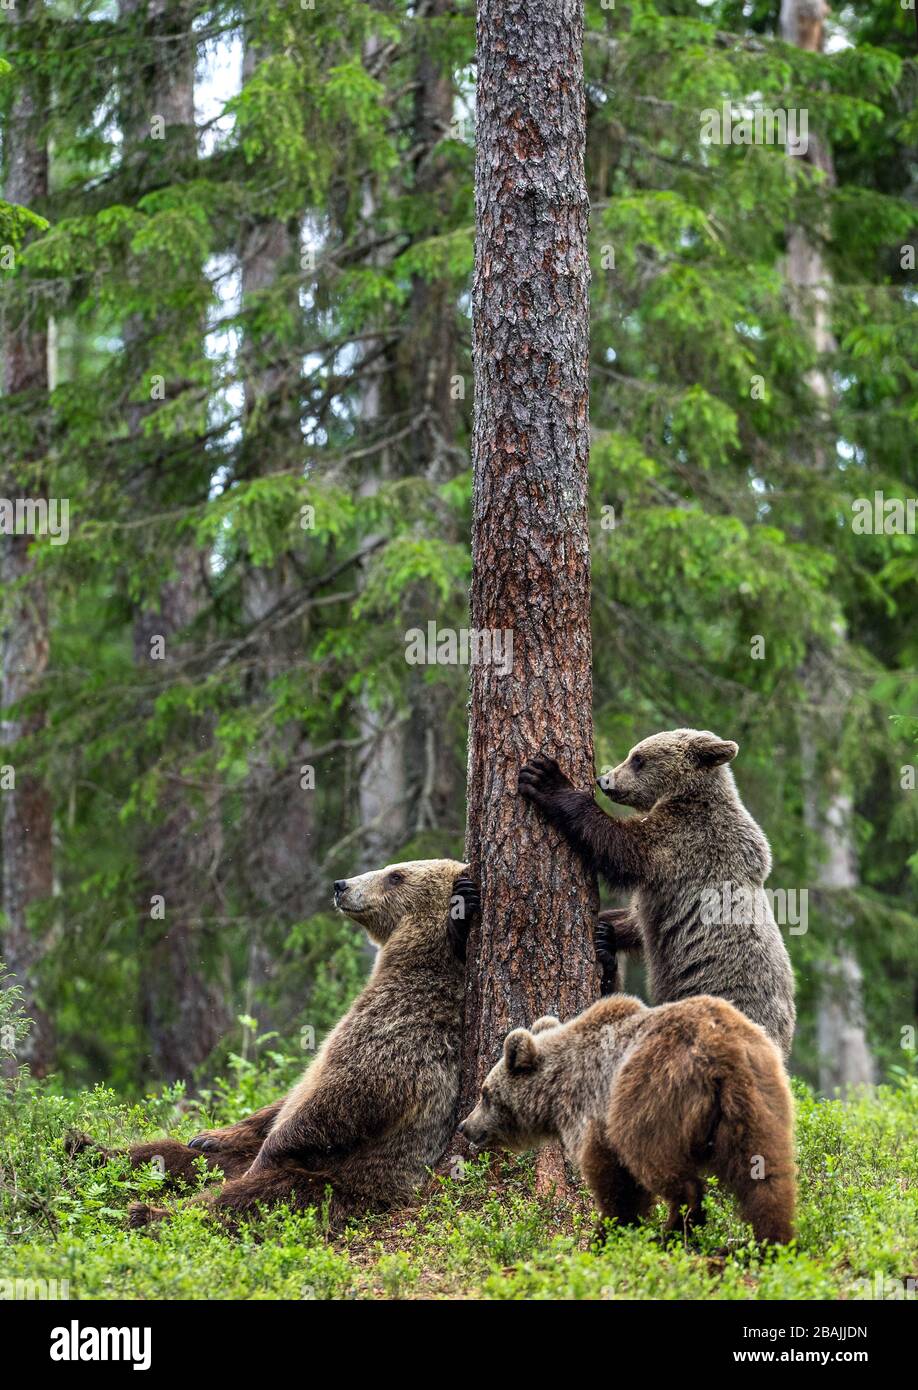 Sie trägt und trägt Kübel im sommerlichen Kiefernwald. Braunbärenkuppe klettert im Sommerwald auf Baum. Wissenschaftlicher Name: Ursus arctos. Natürlicher Lebensraum. Stockfoto